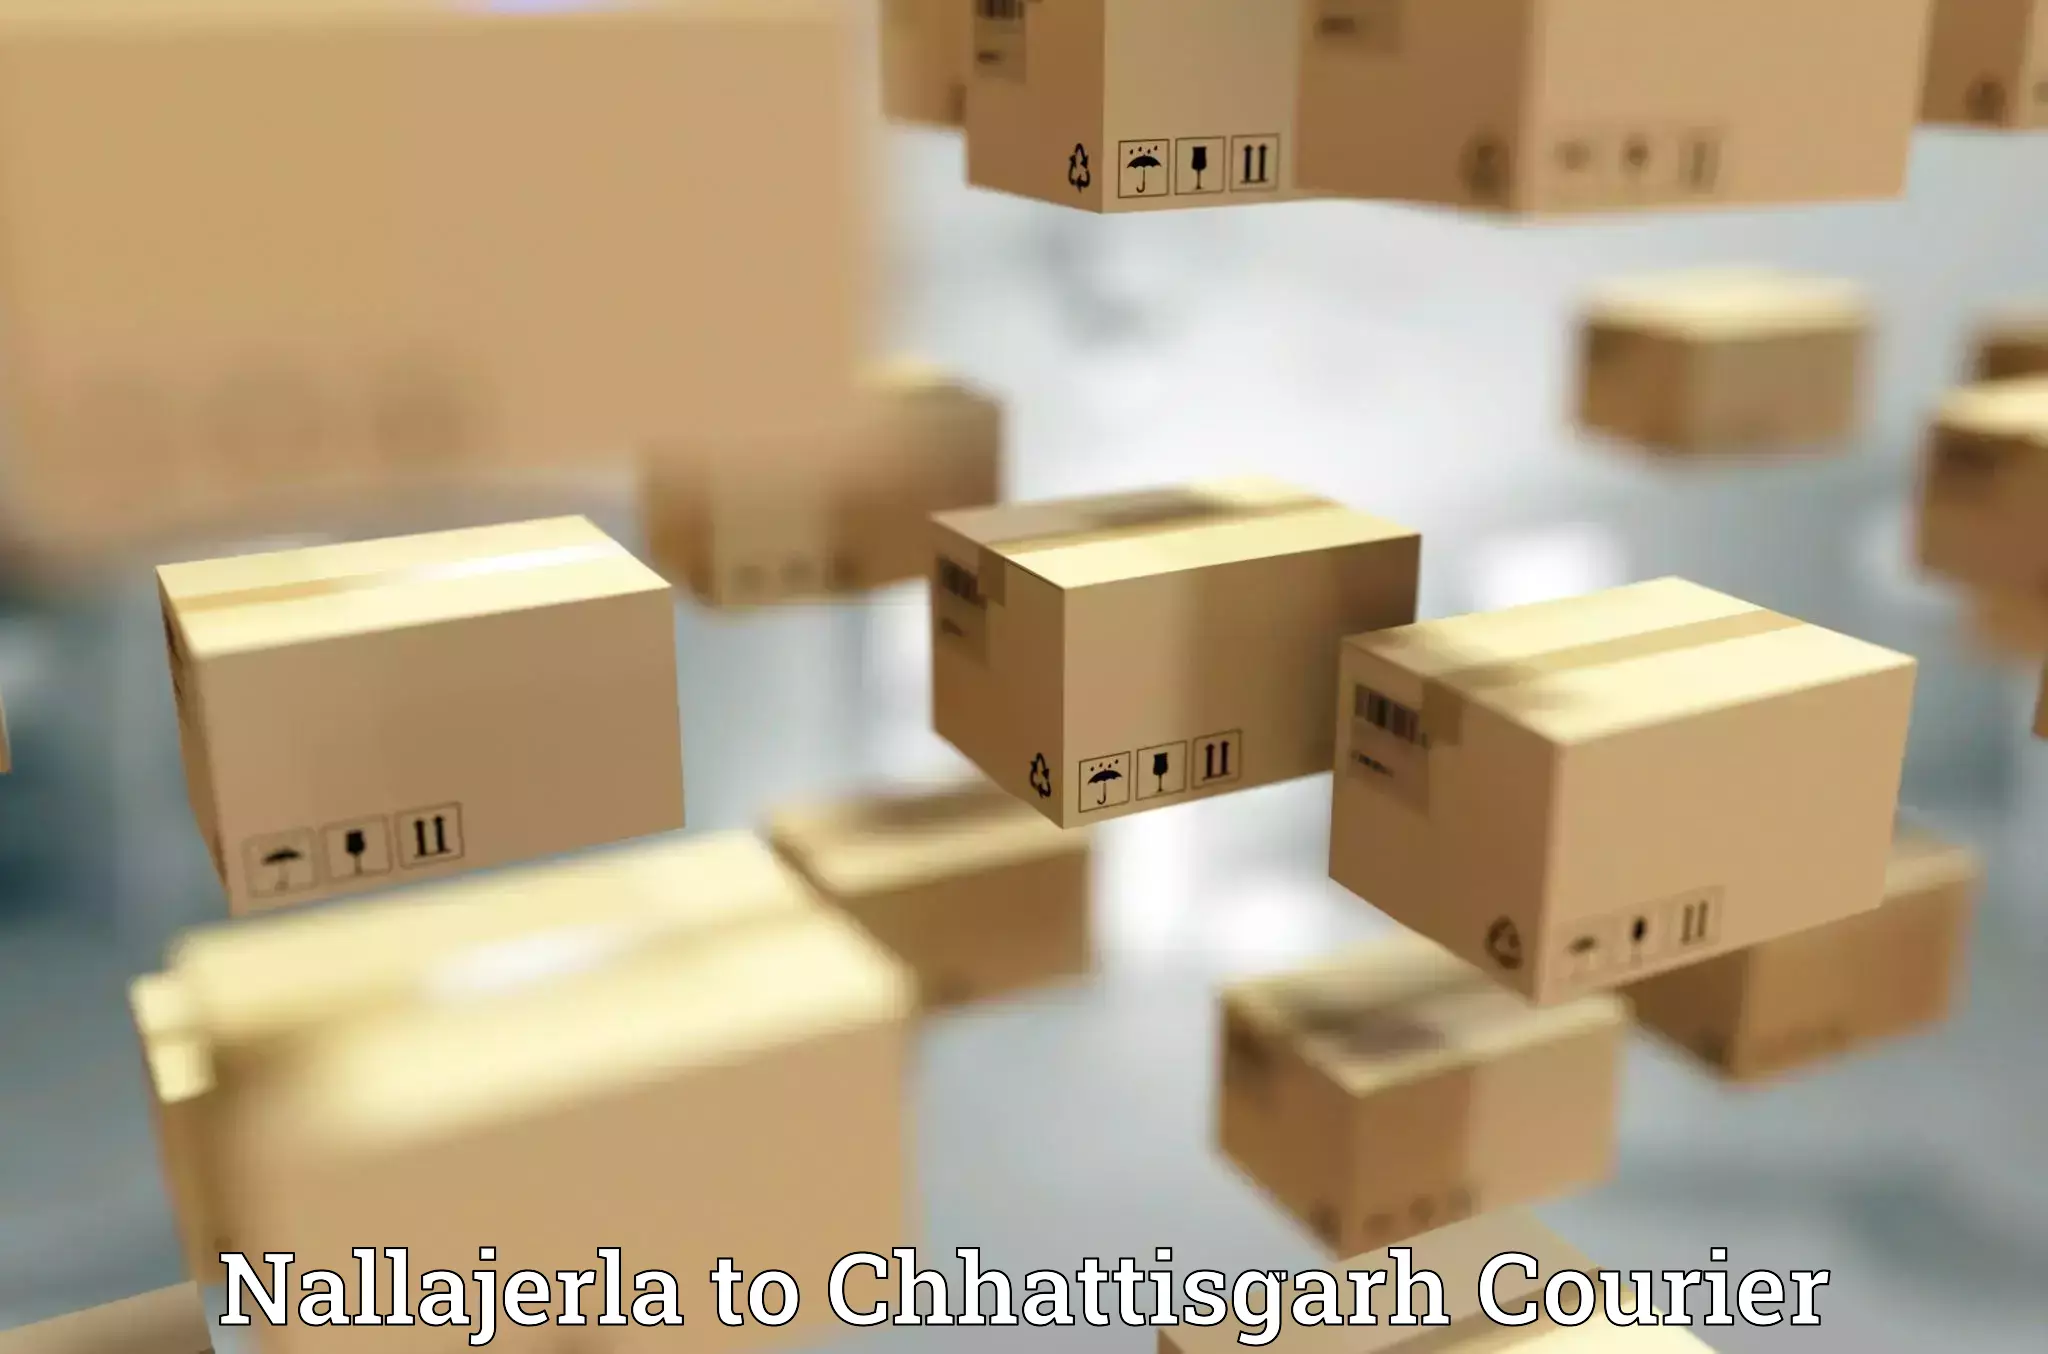 Corporate courier solutions Nallajerla to Korea Chhattisgarh